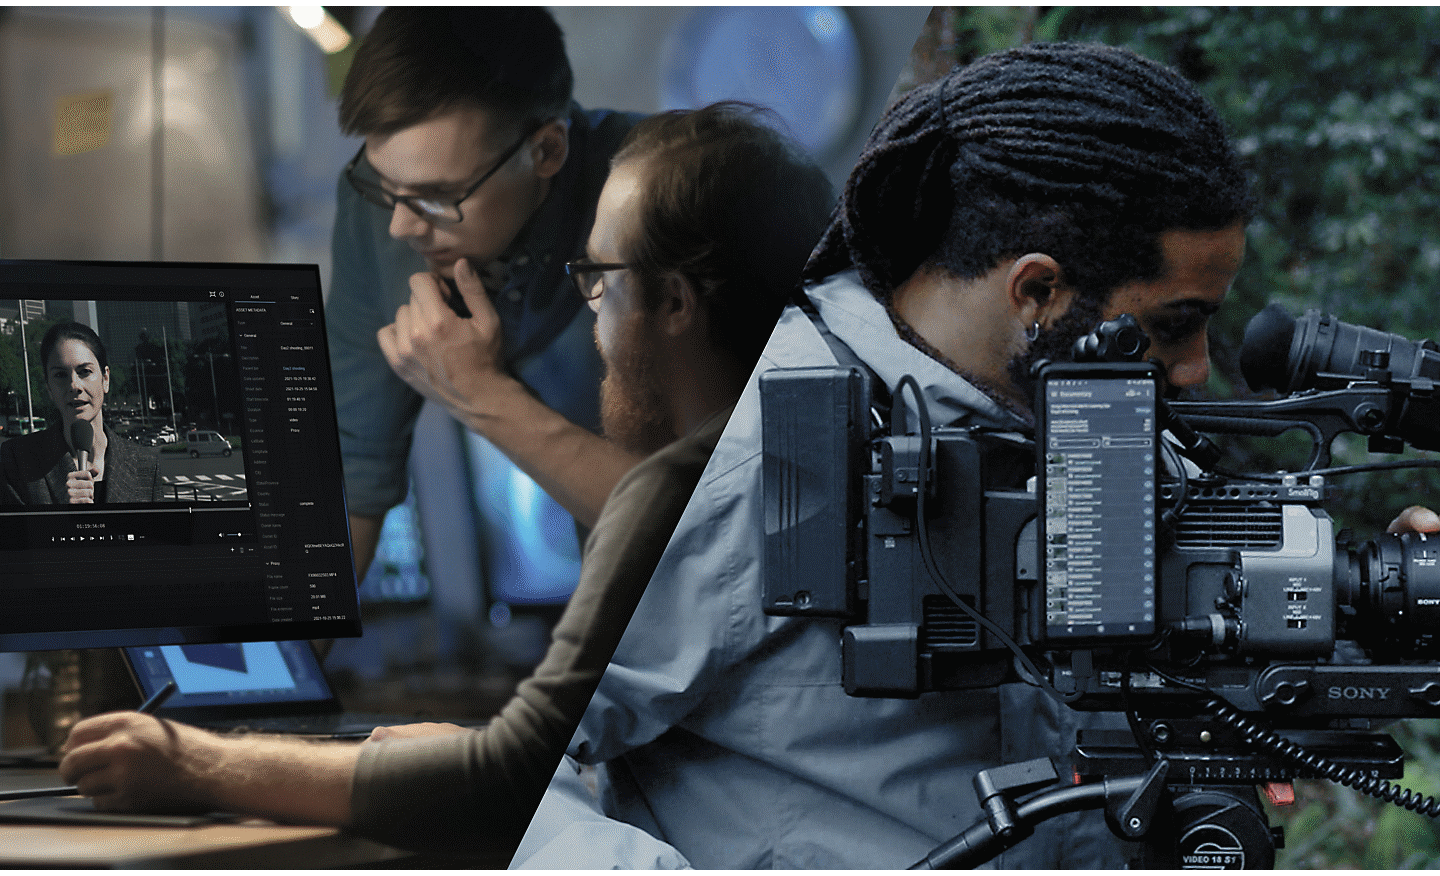 Ένα κινηματογραφικό συνεργείο τριών ατόμων βρίσκεται σε μια δασώδη περιοχή. Ένα από τα άτομα ρυθμίζει μια φωτογραφική μηχανή Sony κινηματογραφικής σειράς που συνδέεται στο cloud μέσω ενός smartphone Xperia.